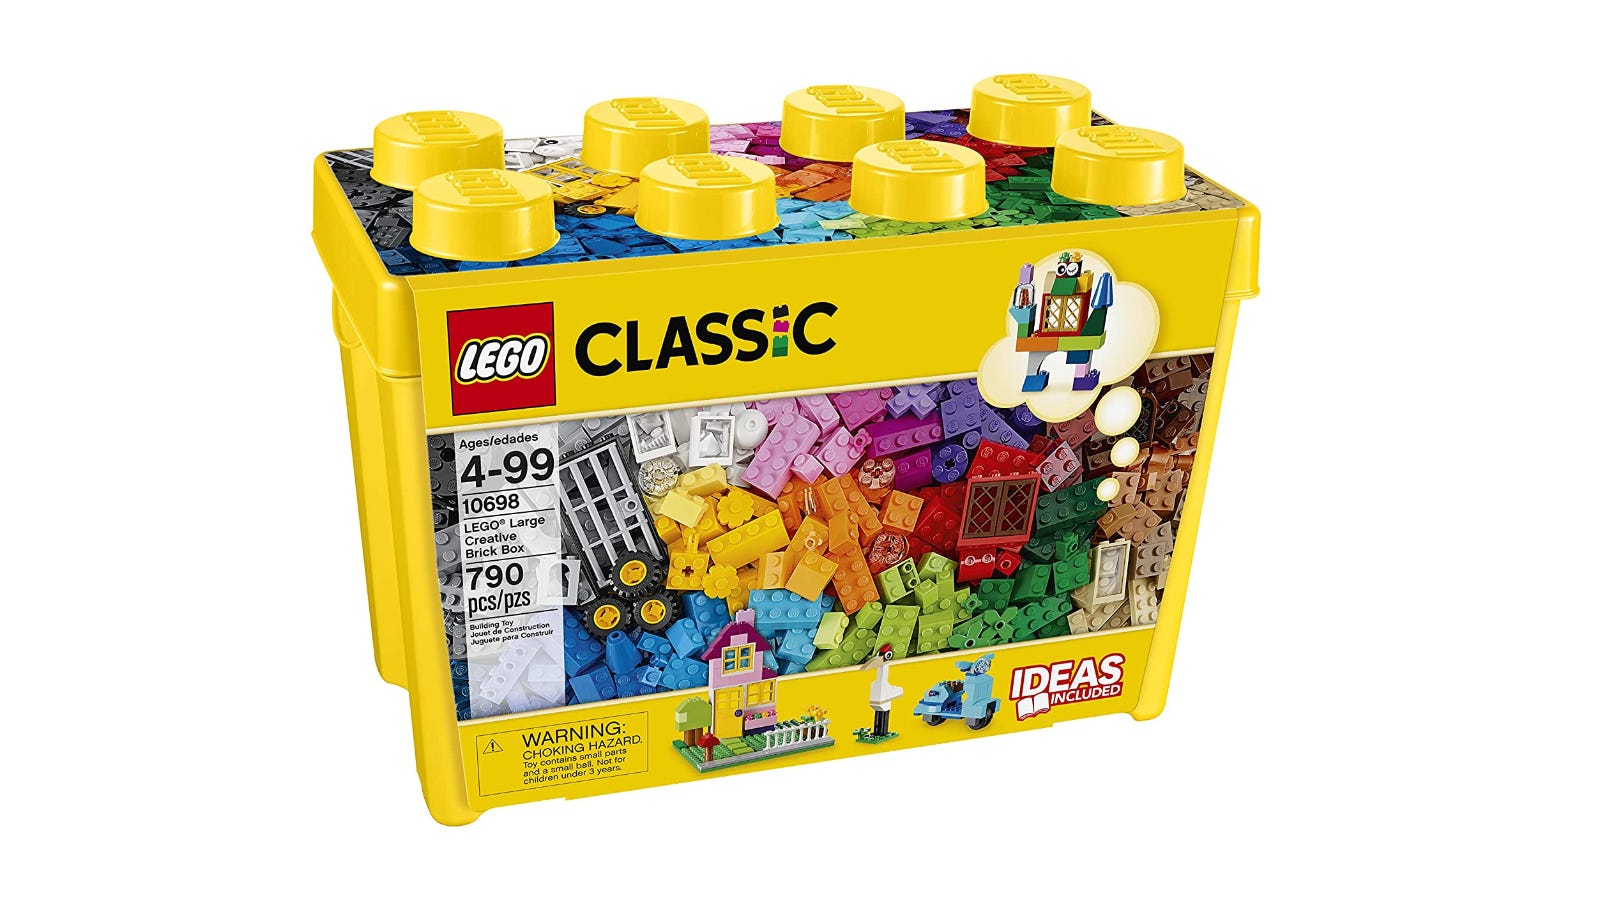 Hộp gạch sáng tạo cổ điển LEGO